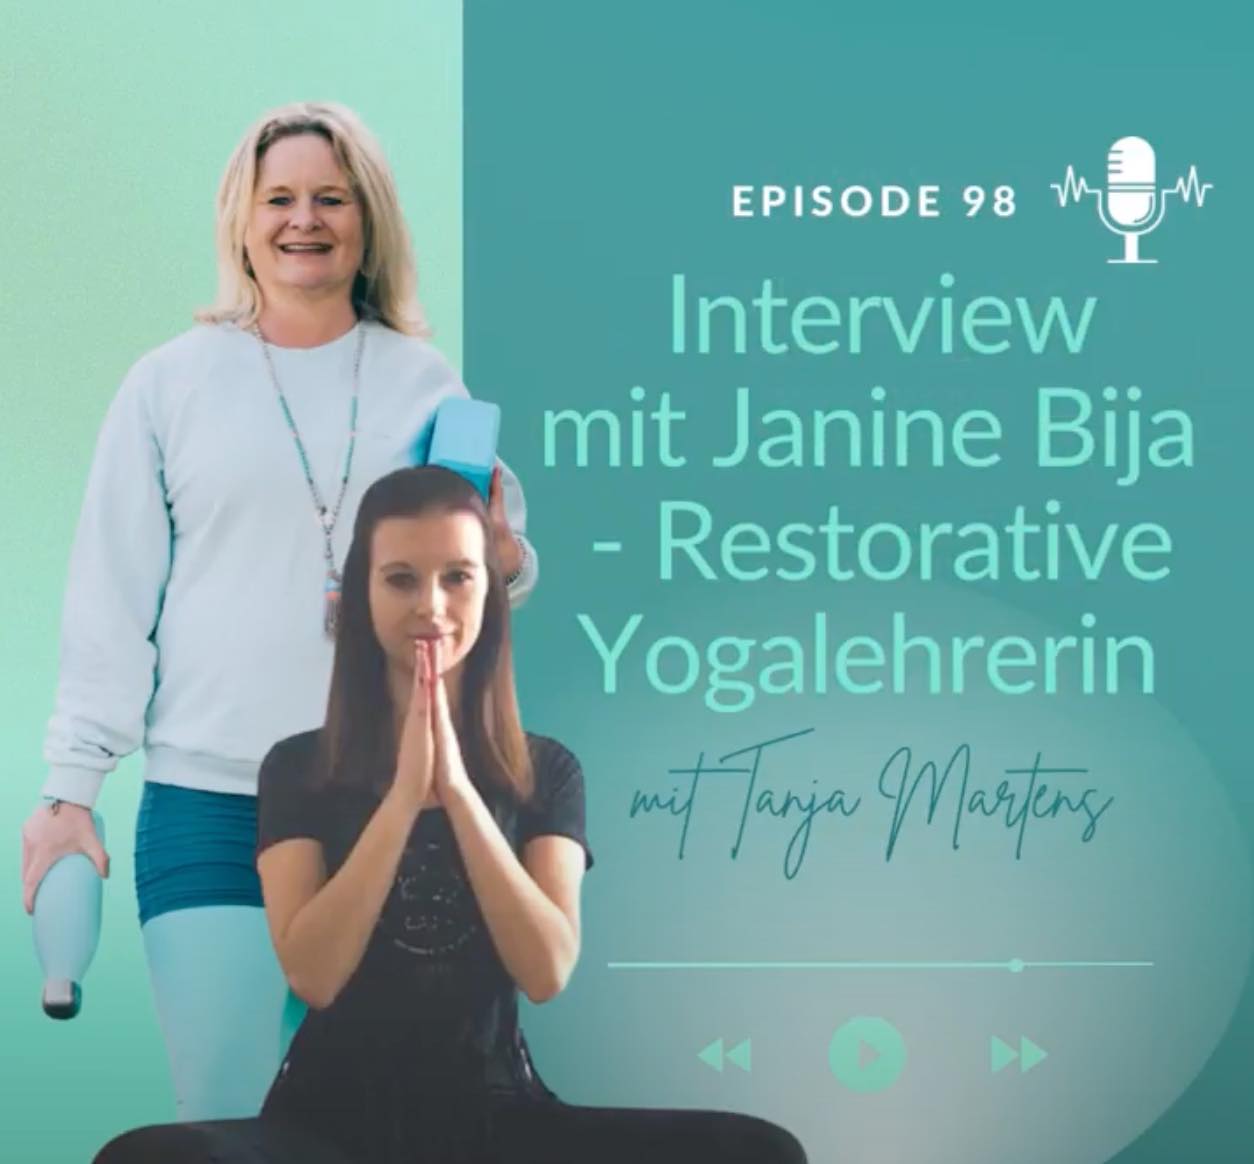 #98 – Restorative Yoga als Yogalehrerin und deine eigene Praxiserfahrung Interview mit Teilnehmerin Janine Bija